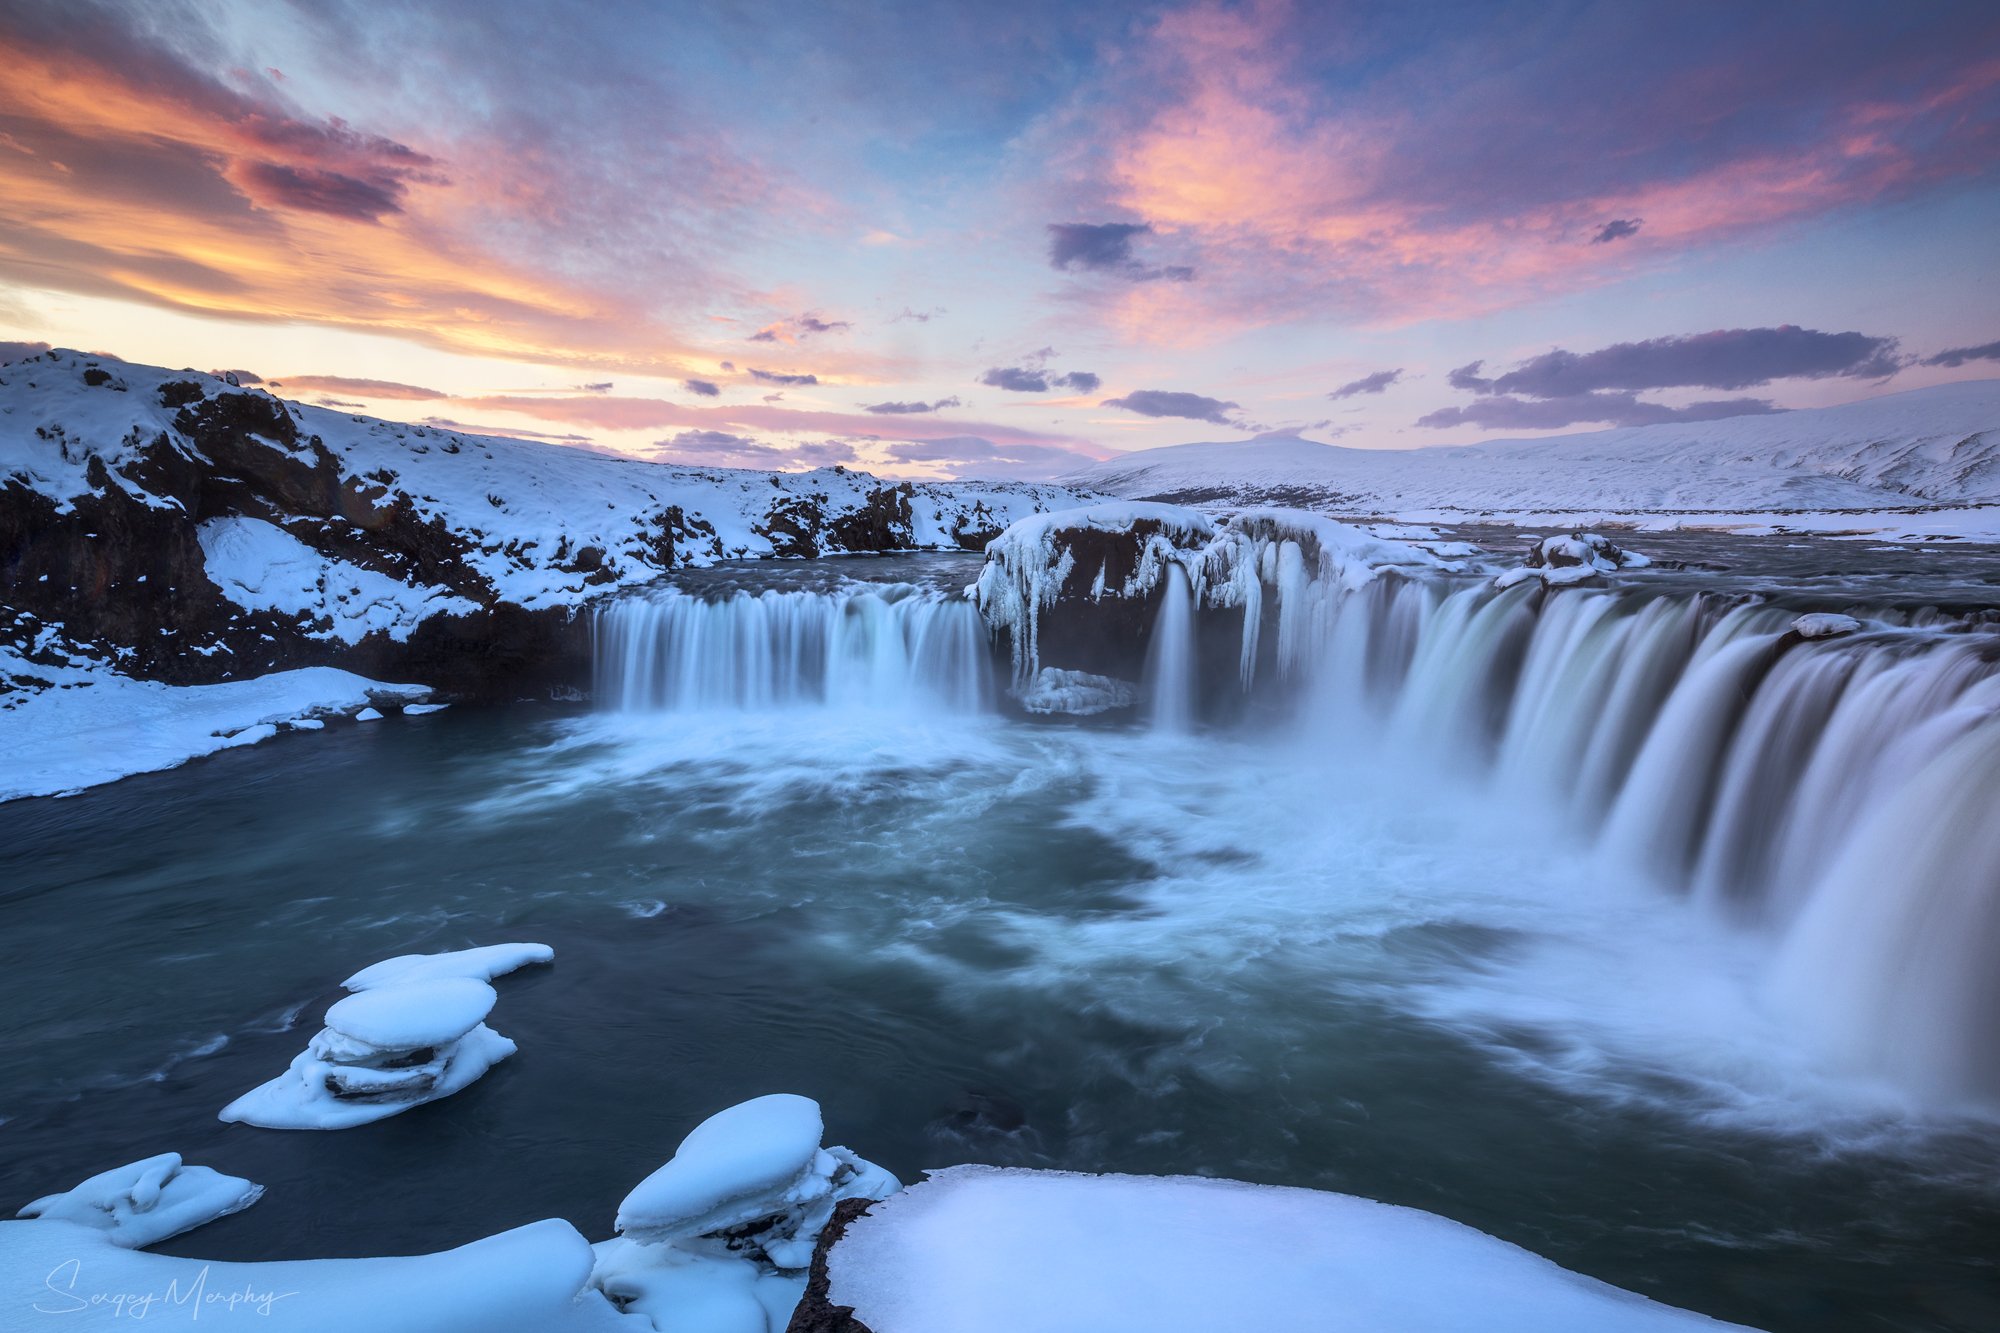 sunrise godafoss waterfall iceland, Sergey Merphy